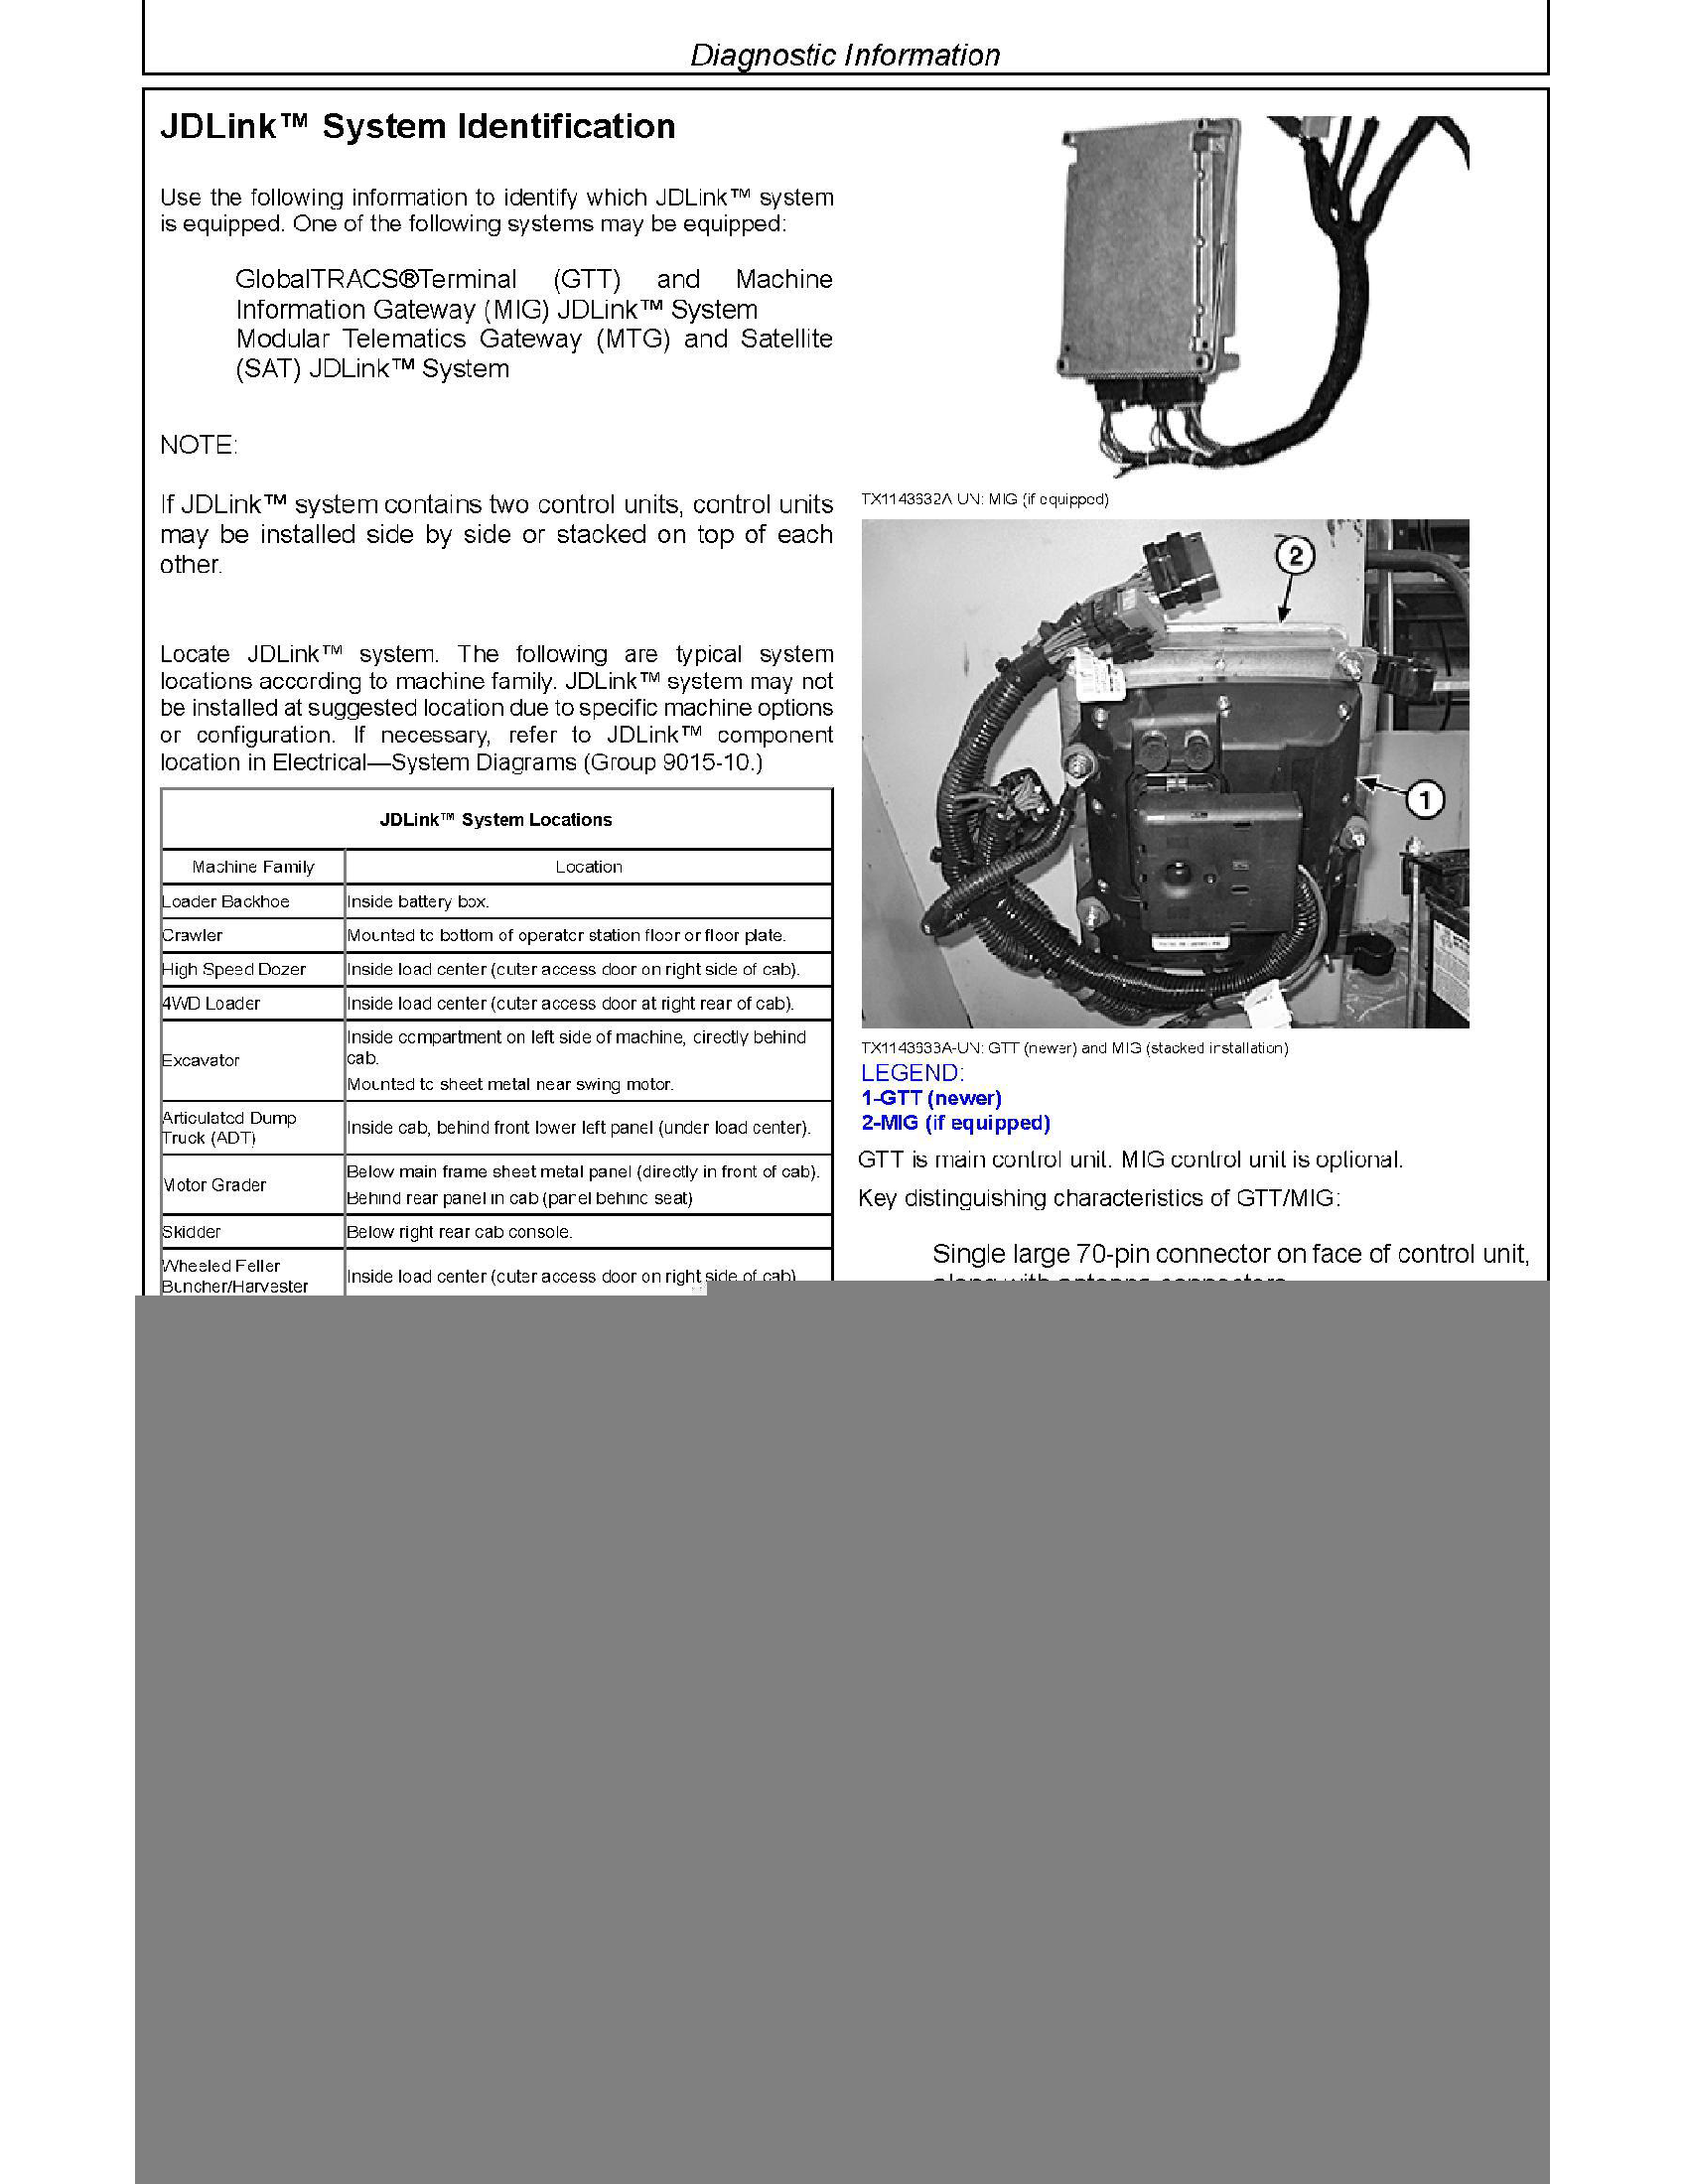 John Deere 35G manual pdf